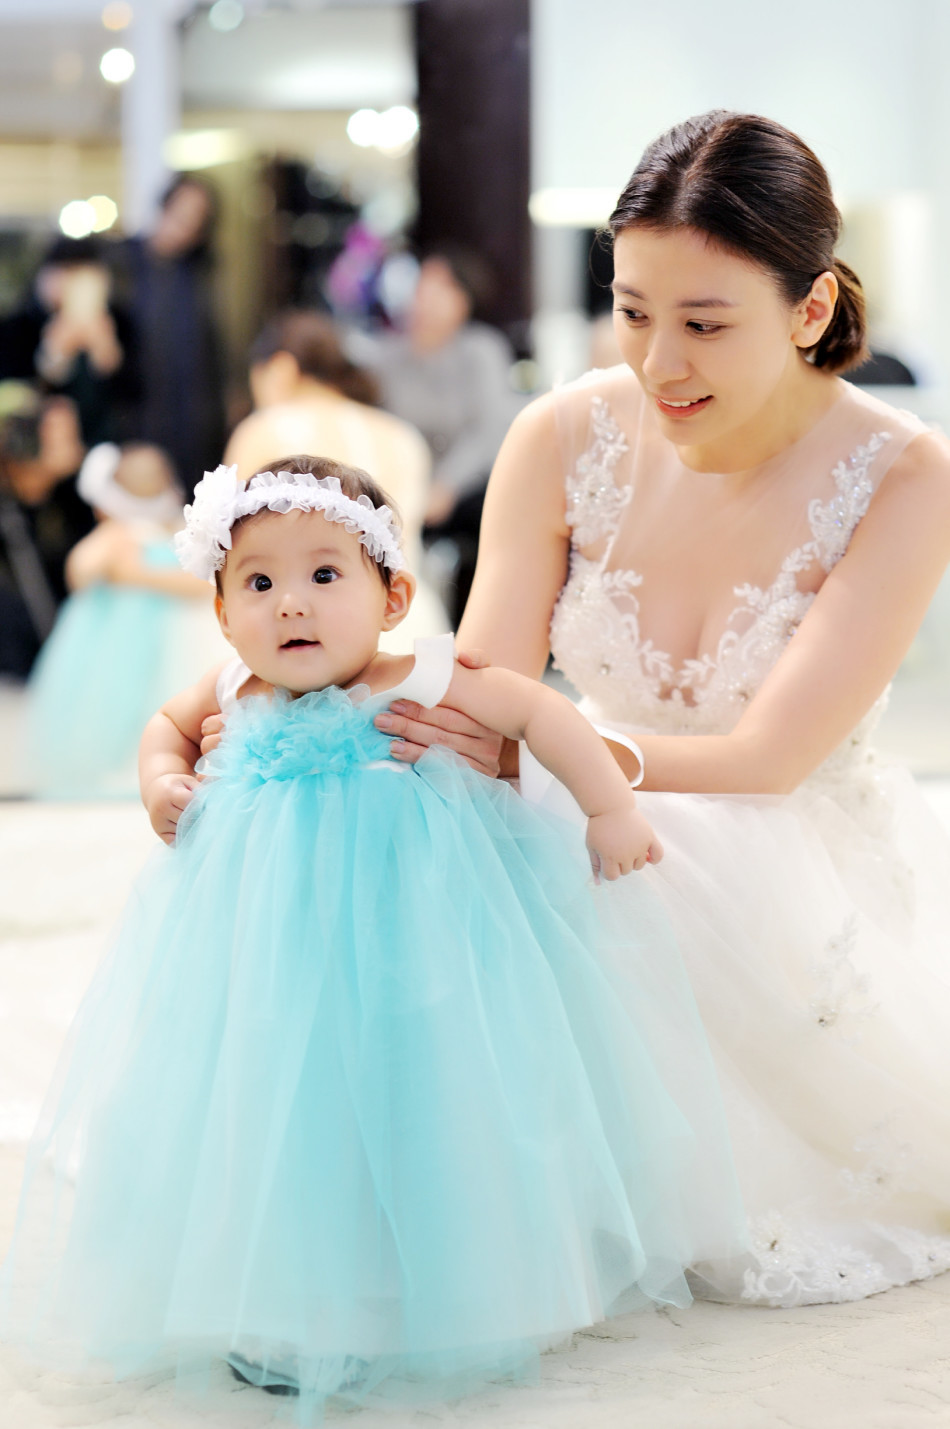 贾静雯和女儿同穿婚纱 大小公主美呆众人